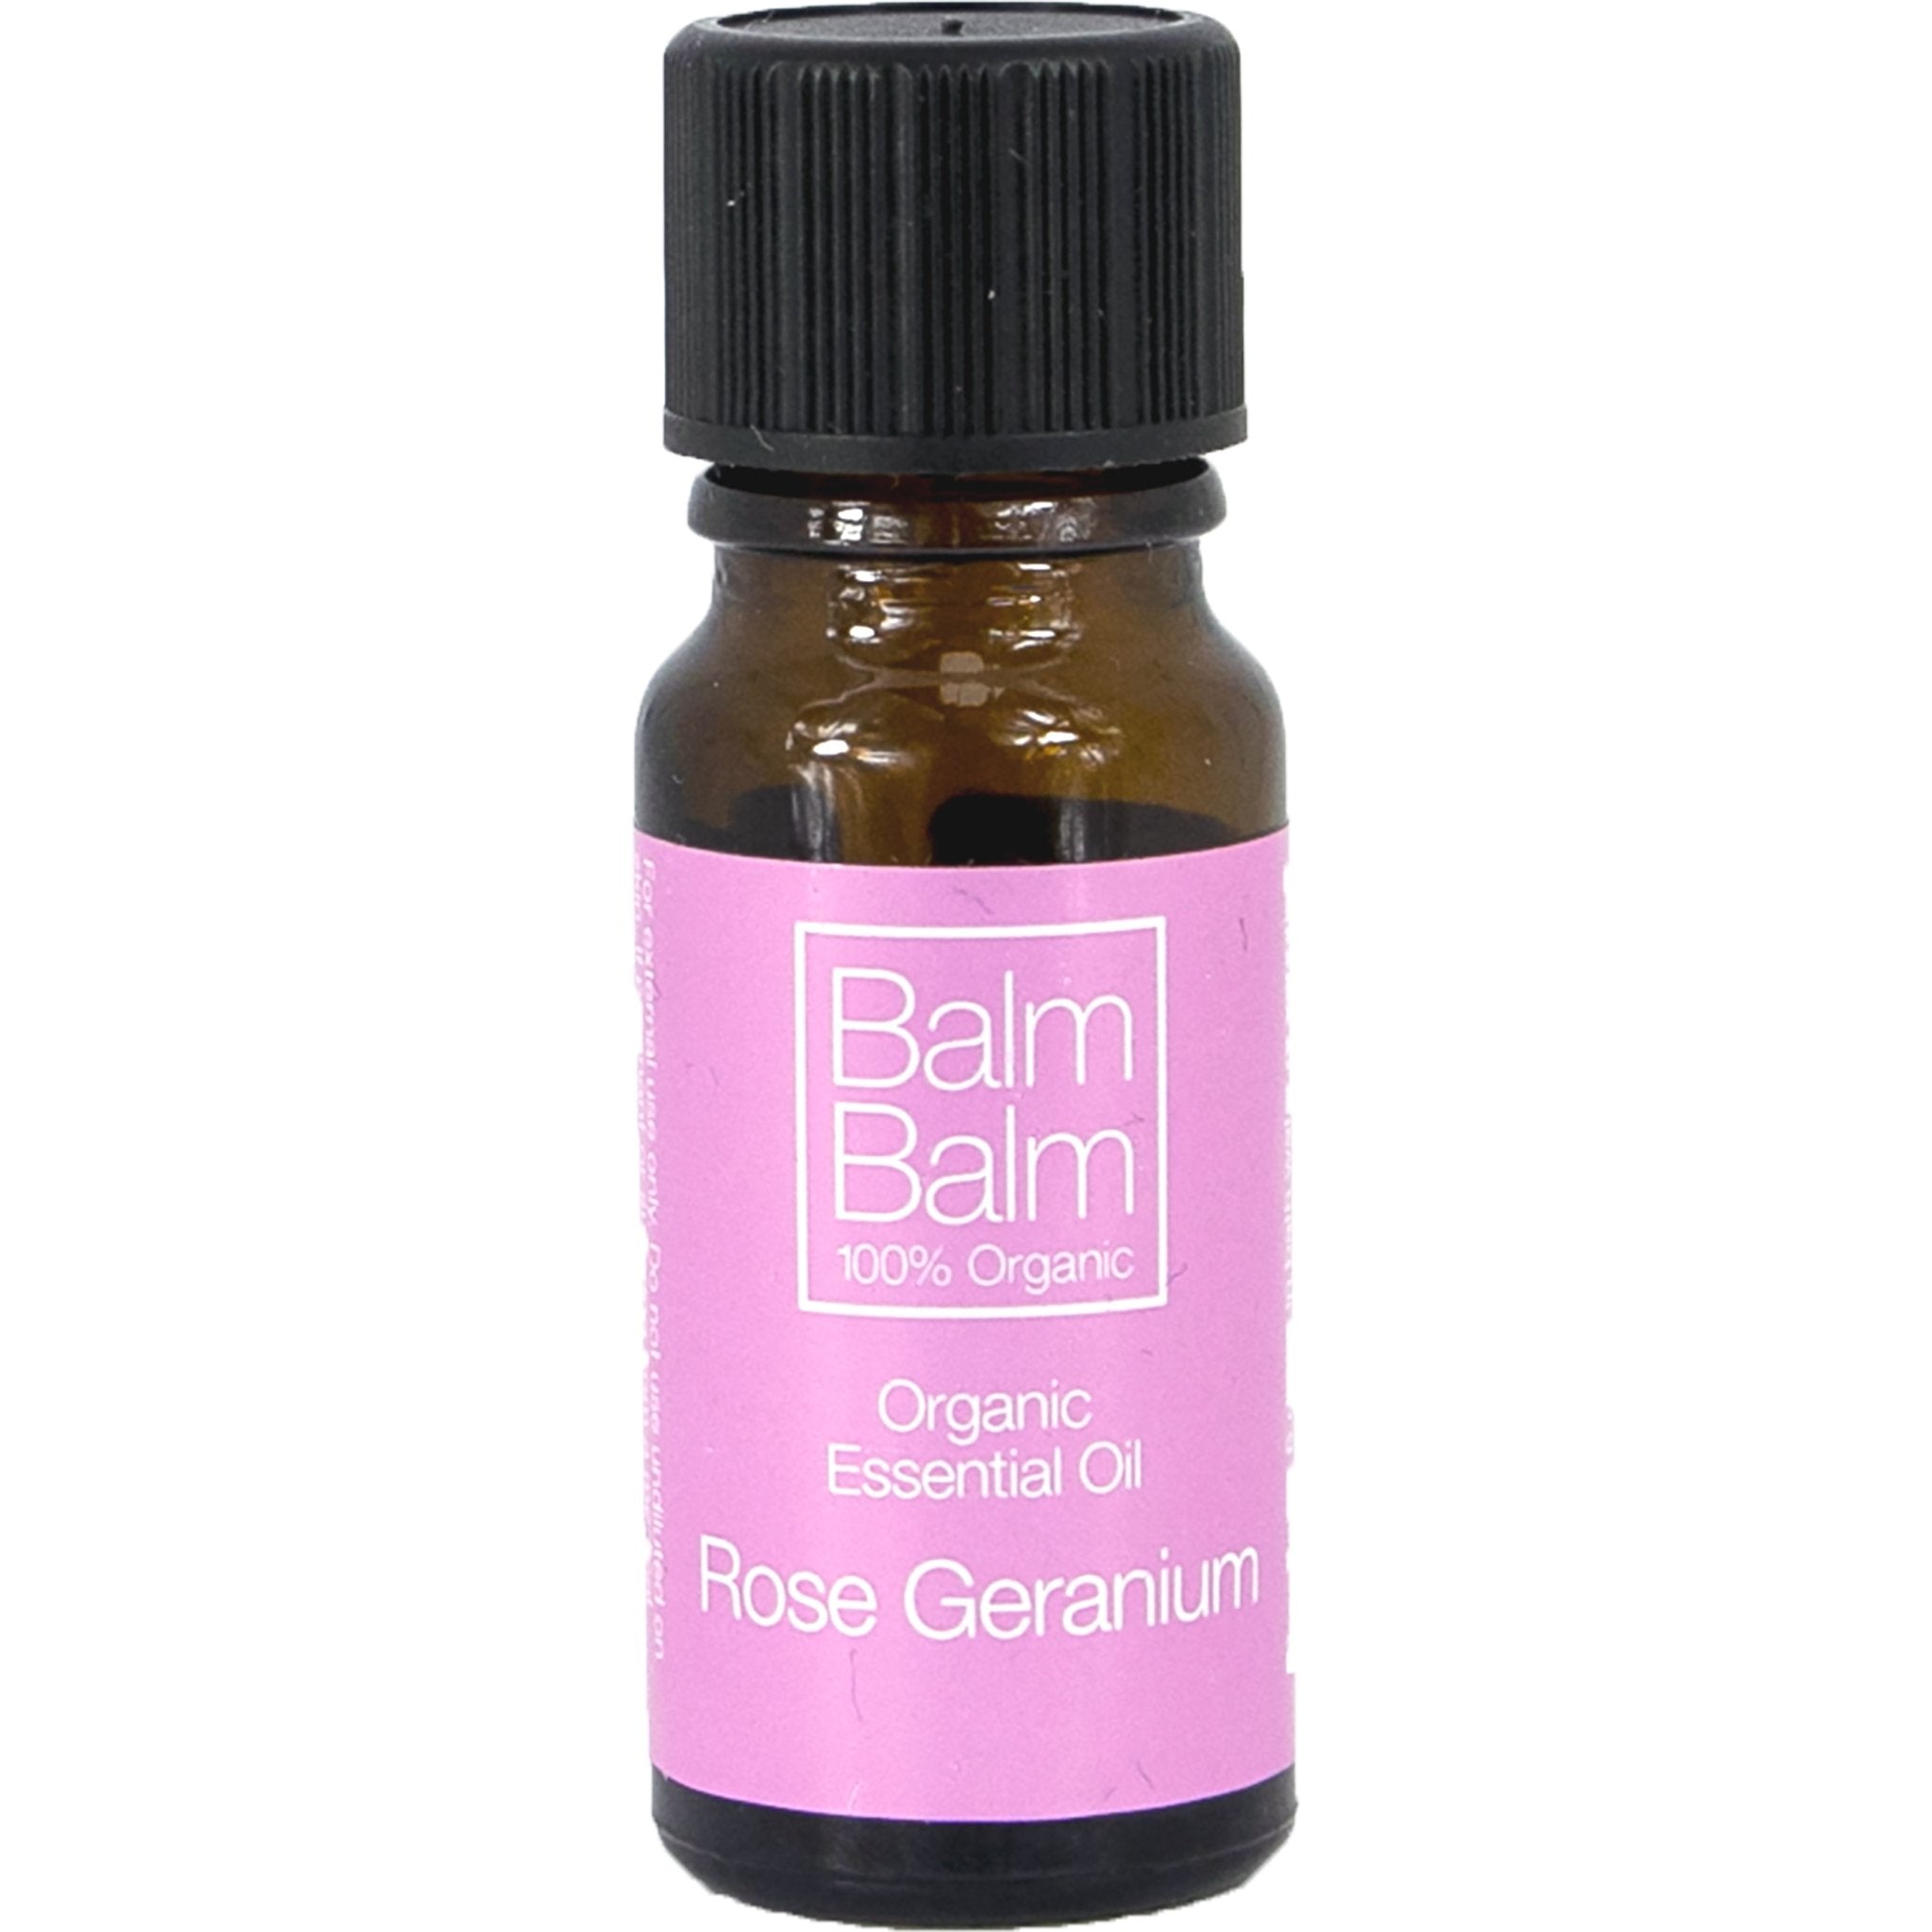 Rose Geranium Essential Oil - mypure.co.uk